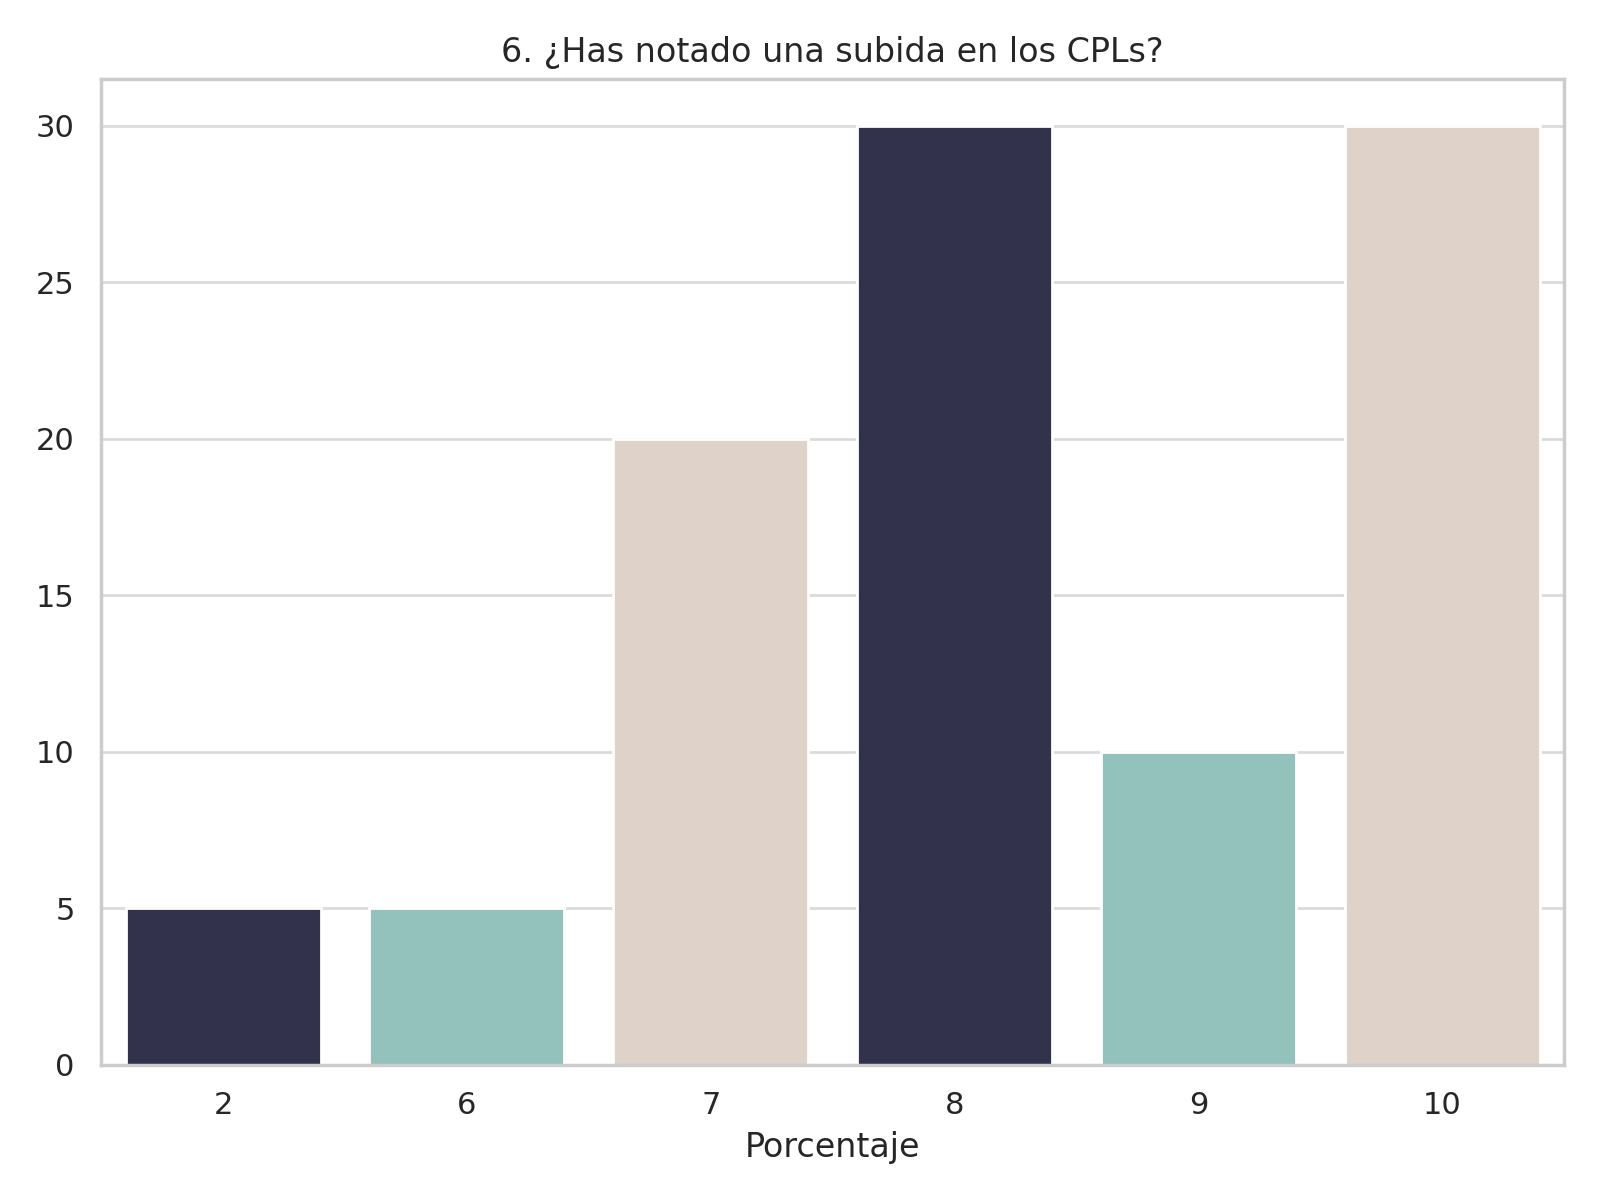 Análisis de la subida en los CPLs (Coste Por Lead)